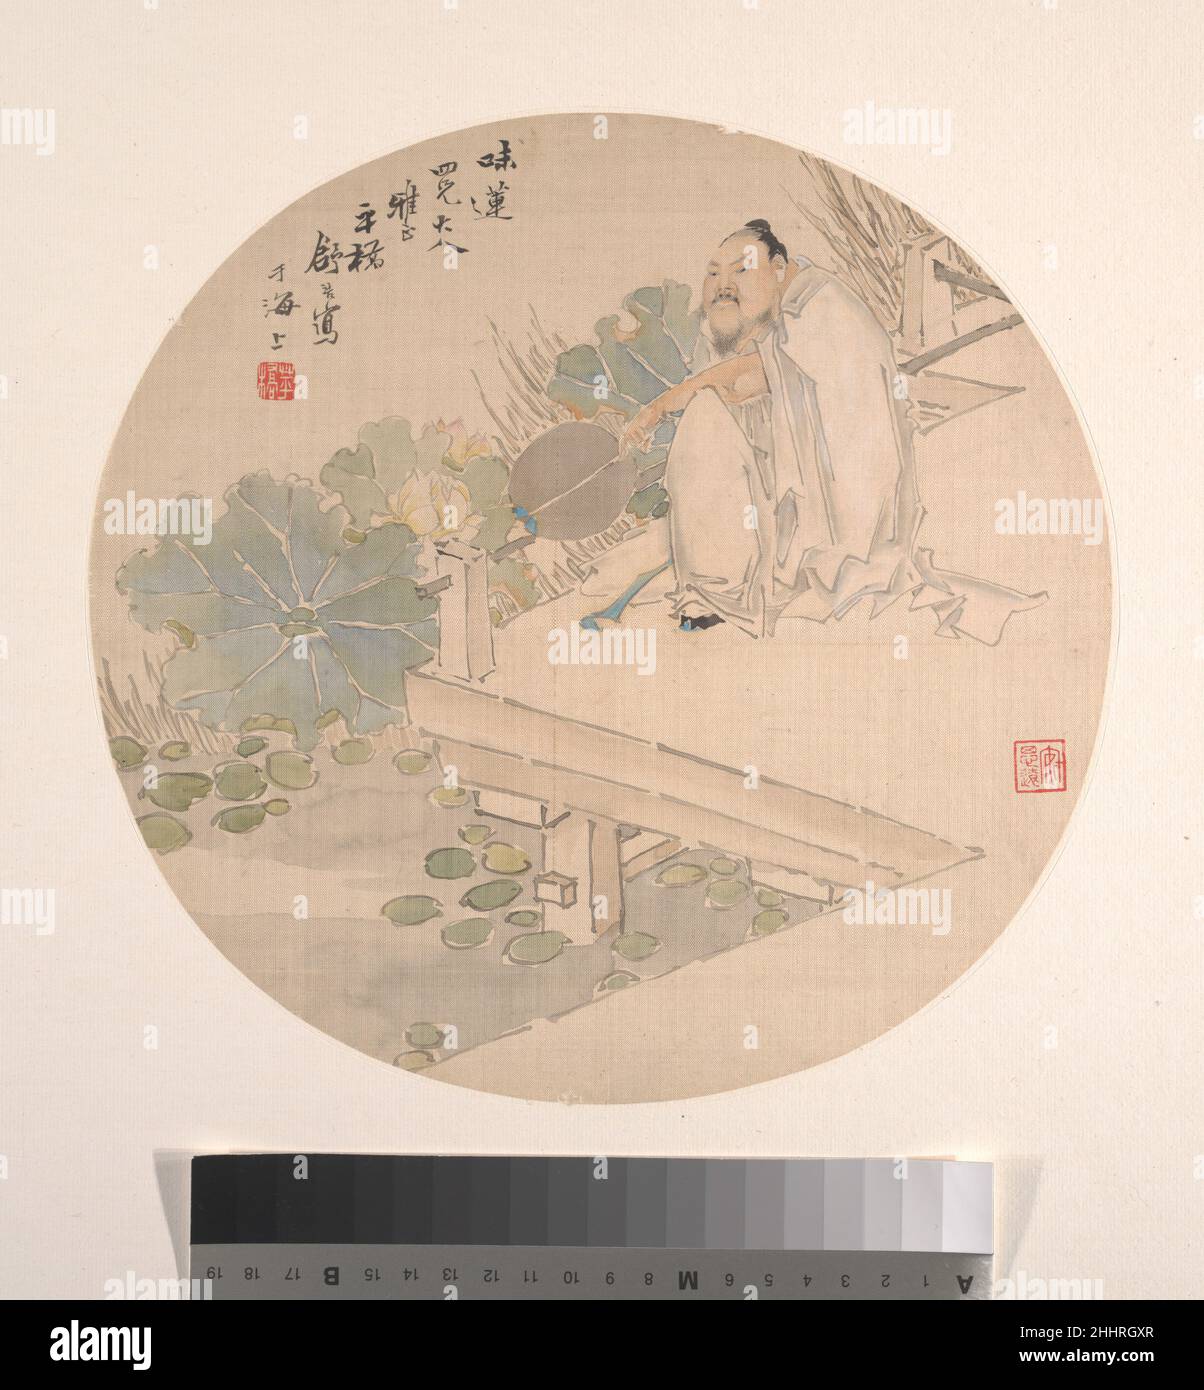 Admirer Lotus Shu Hao Chinois Xu Hao peint régulièrement des sujets de la littérature populaire, en utilisant un style de figure basé sur Chen Hongshou.Dans ce fan rond, il ramène sur terre le philosophe néo-confucianiste Song Zhou Dunyi (1017–73), auteur du célèbre essai admirant Lotus (1063).dans ce tableau, Zhou Dunyi tient un fan comme celui que la forme des images imite.Il n'y a pas de marque le long de la ligne centrale de la peinture pour indiquer que l'image a toujours servi de ventilateur réel, mais la consonance des formes rondes en feuilles de lotus, ventilateur et format est agréable.Admirer Lotus 36172 Banque D'Images